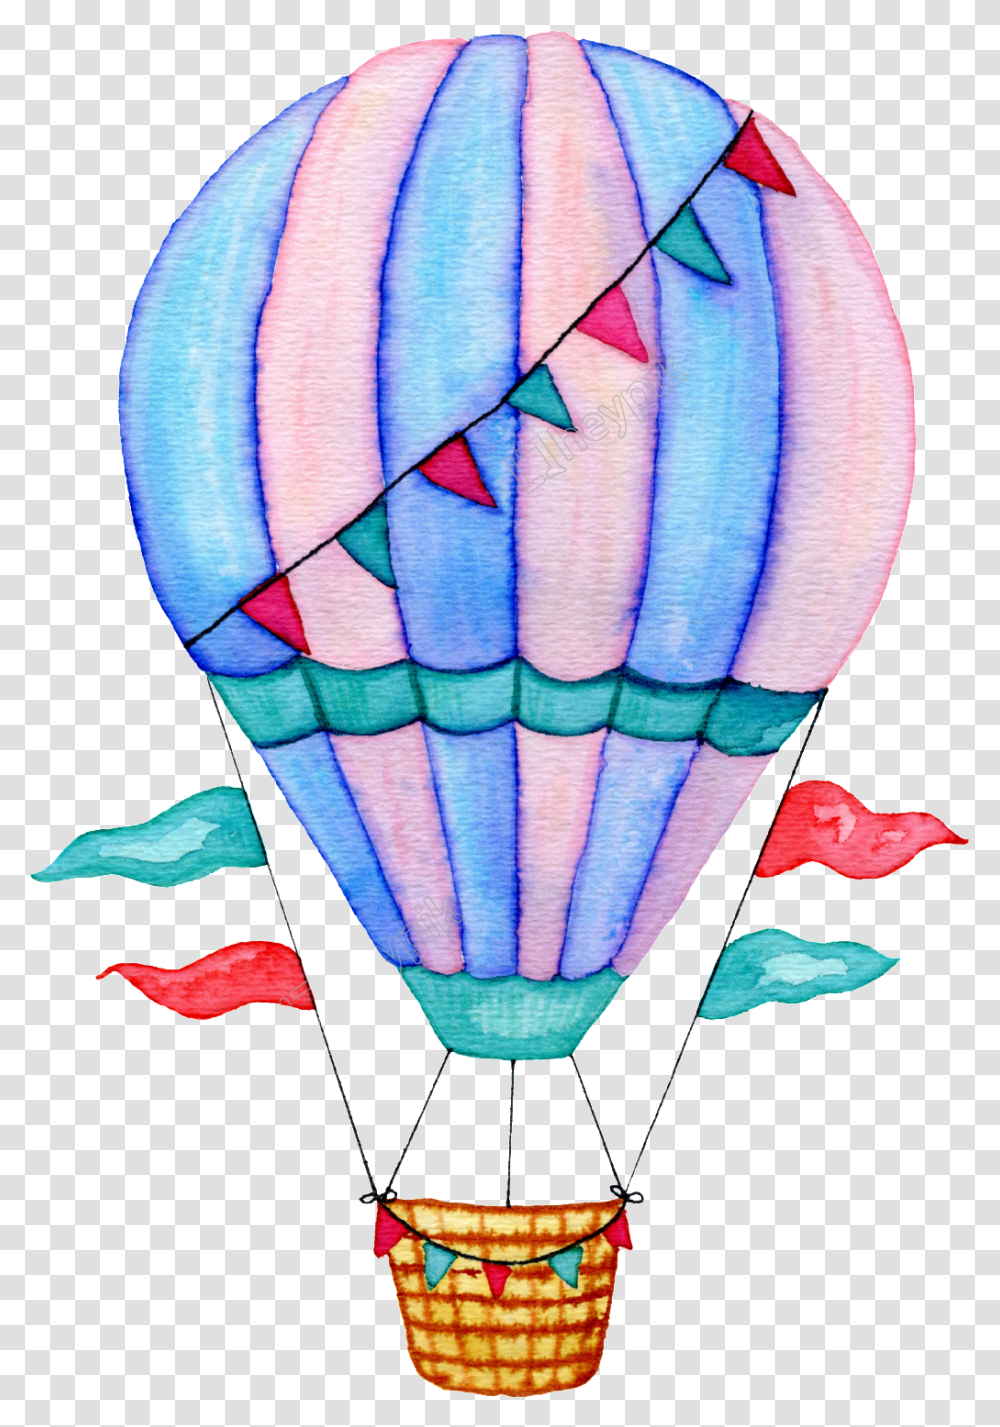 Watercolor Balloons Hot Air Balloon Watercolor, Aircraft, Vehicle, Transportation, Scarf Transparent Png